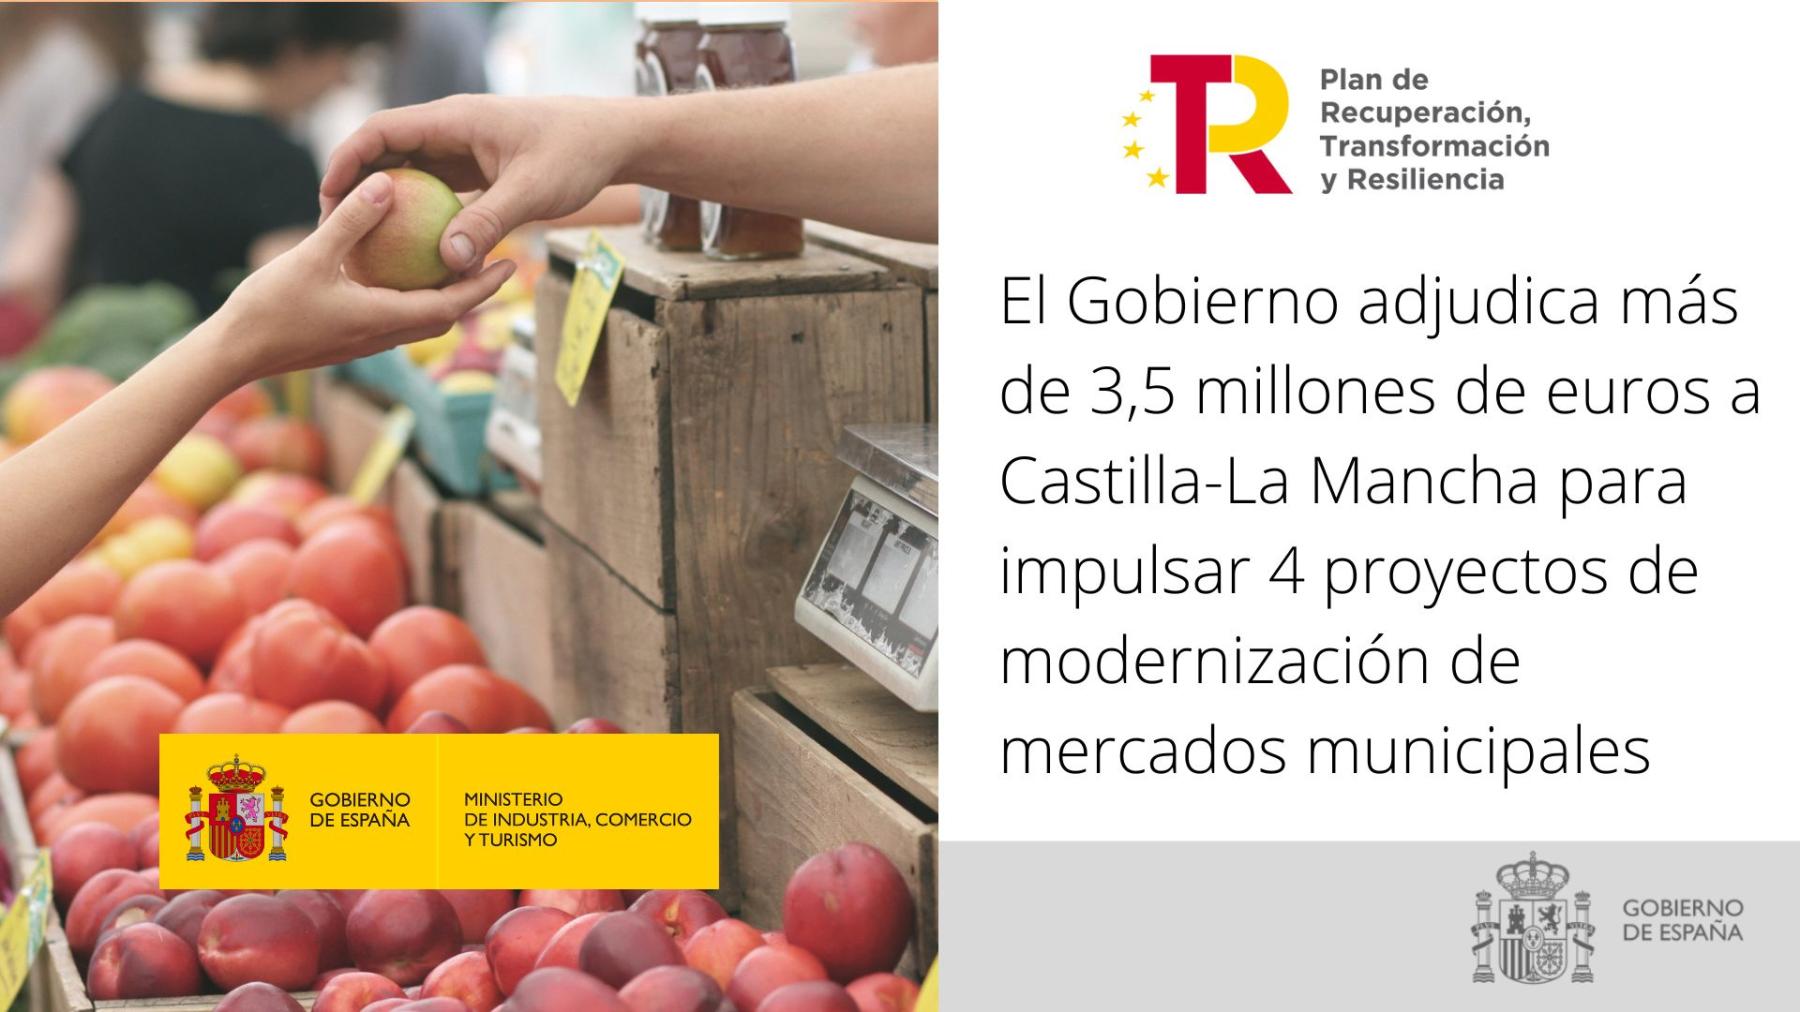 El Gobierno adjudica más de 3,5 millones de euros a Castilla-La Mancha para impulsar 4 proyectos de modernización de mercados municipales